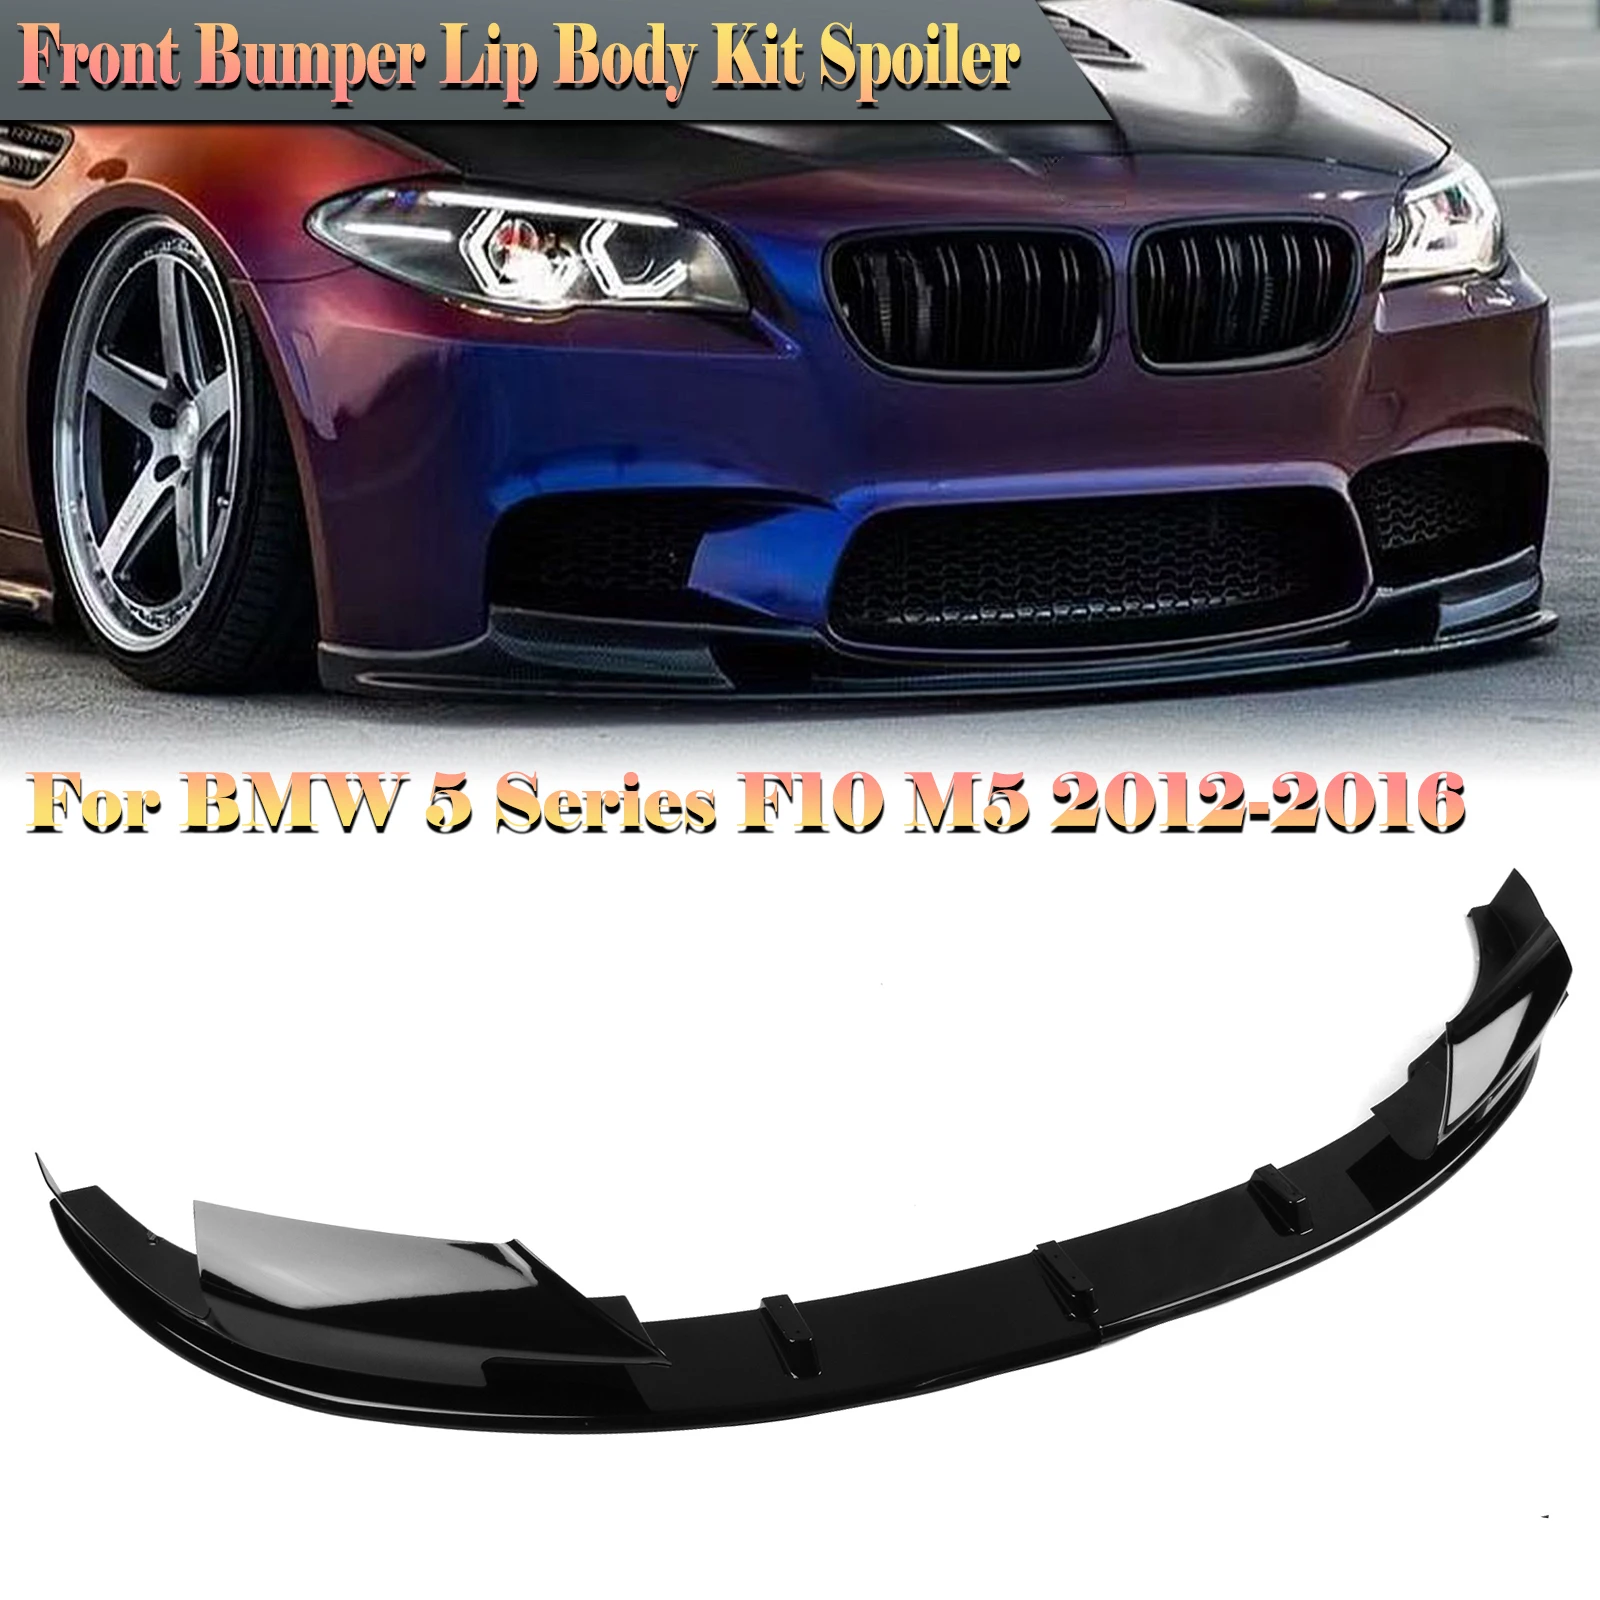 

Глянцевый черный Автомобильный передний бампер, спойлер, губа + боковой угловой сплиттер для вентиляционного отверстия для BMW 5 серии F10 M5 2012 2013 2014 2015 2016